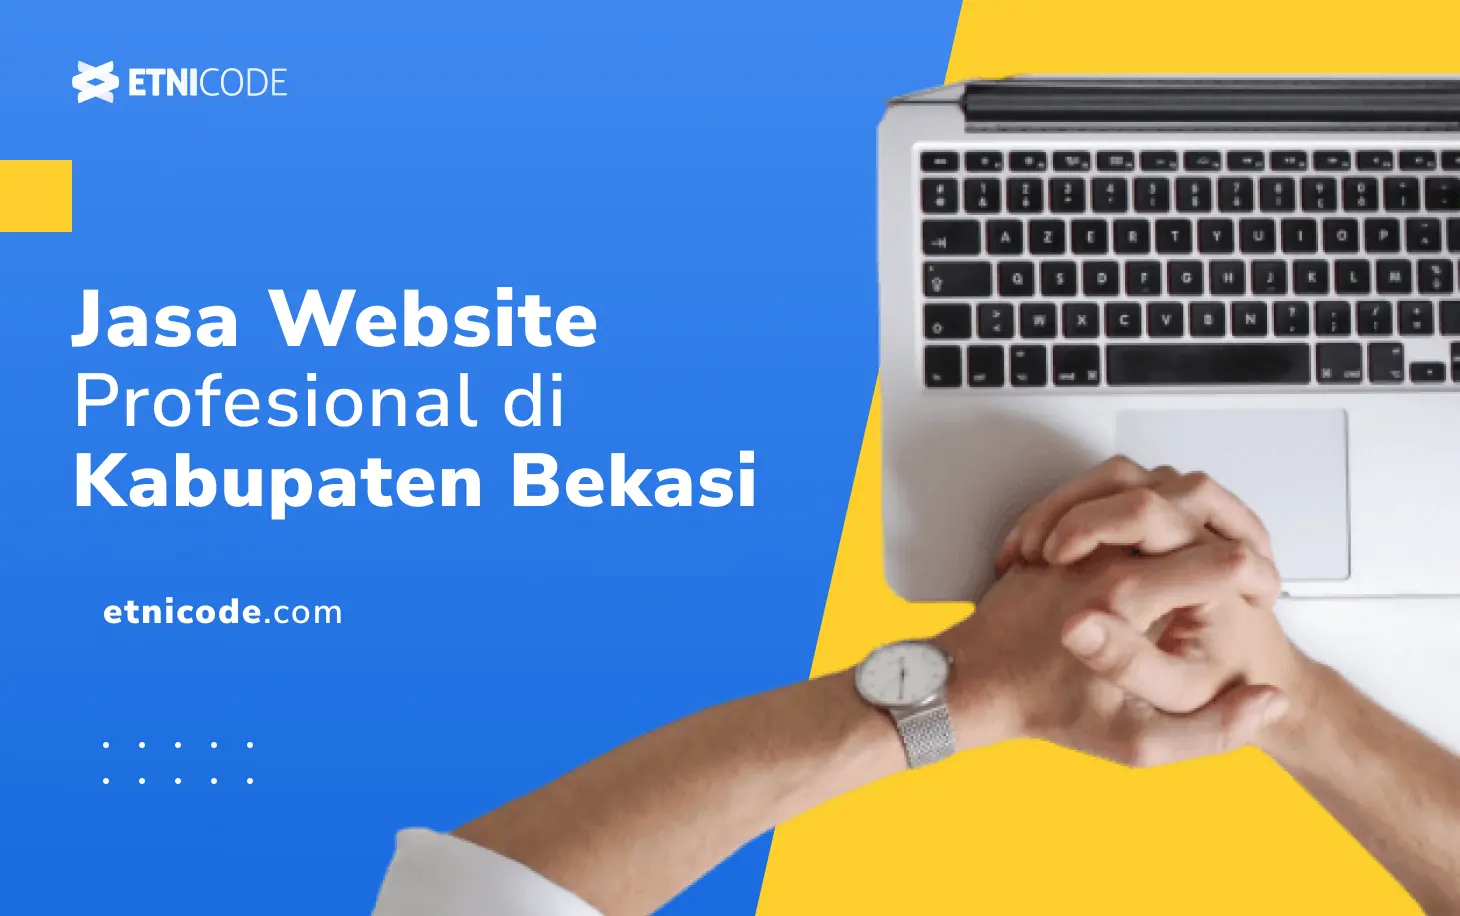 Jasa Website di Bekasi